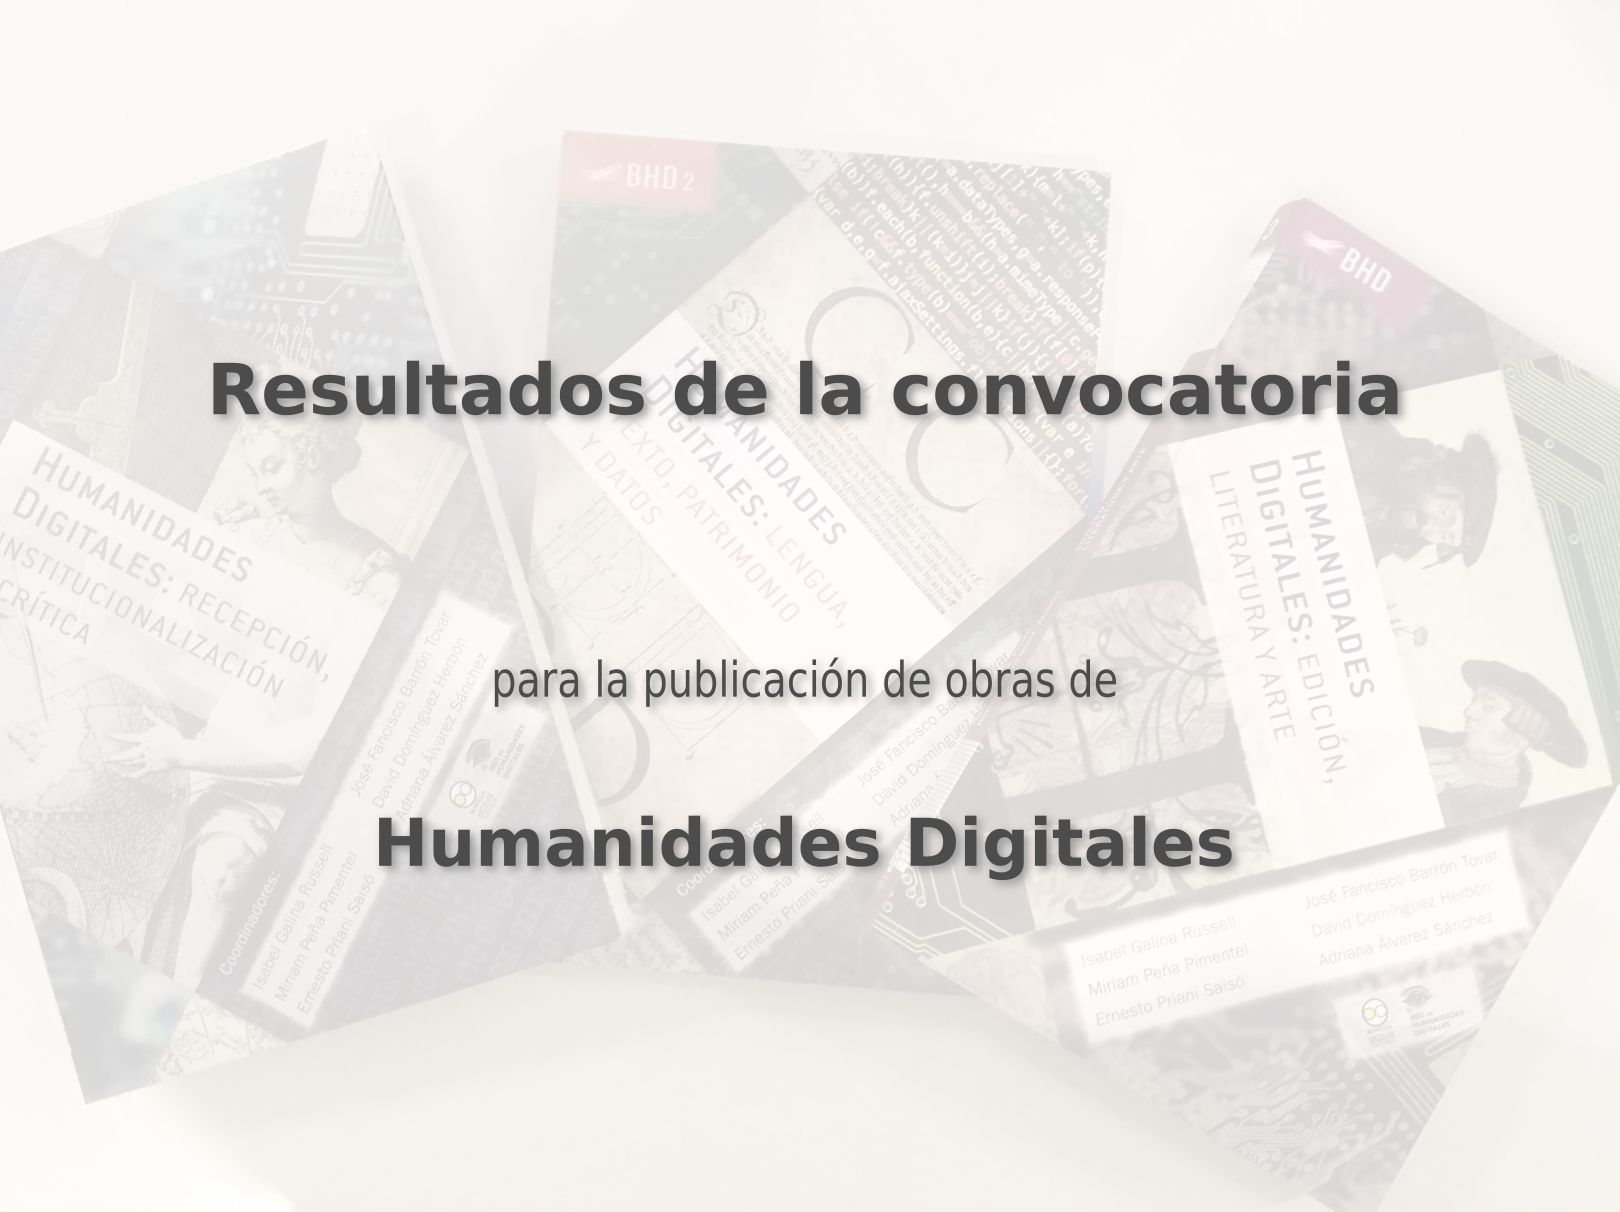 Convocatoria para la publicación de obras de humanidades digitales